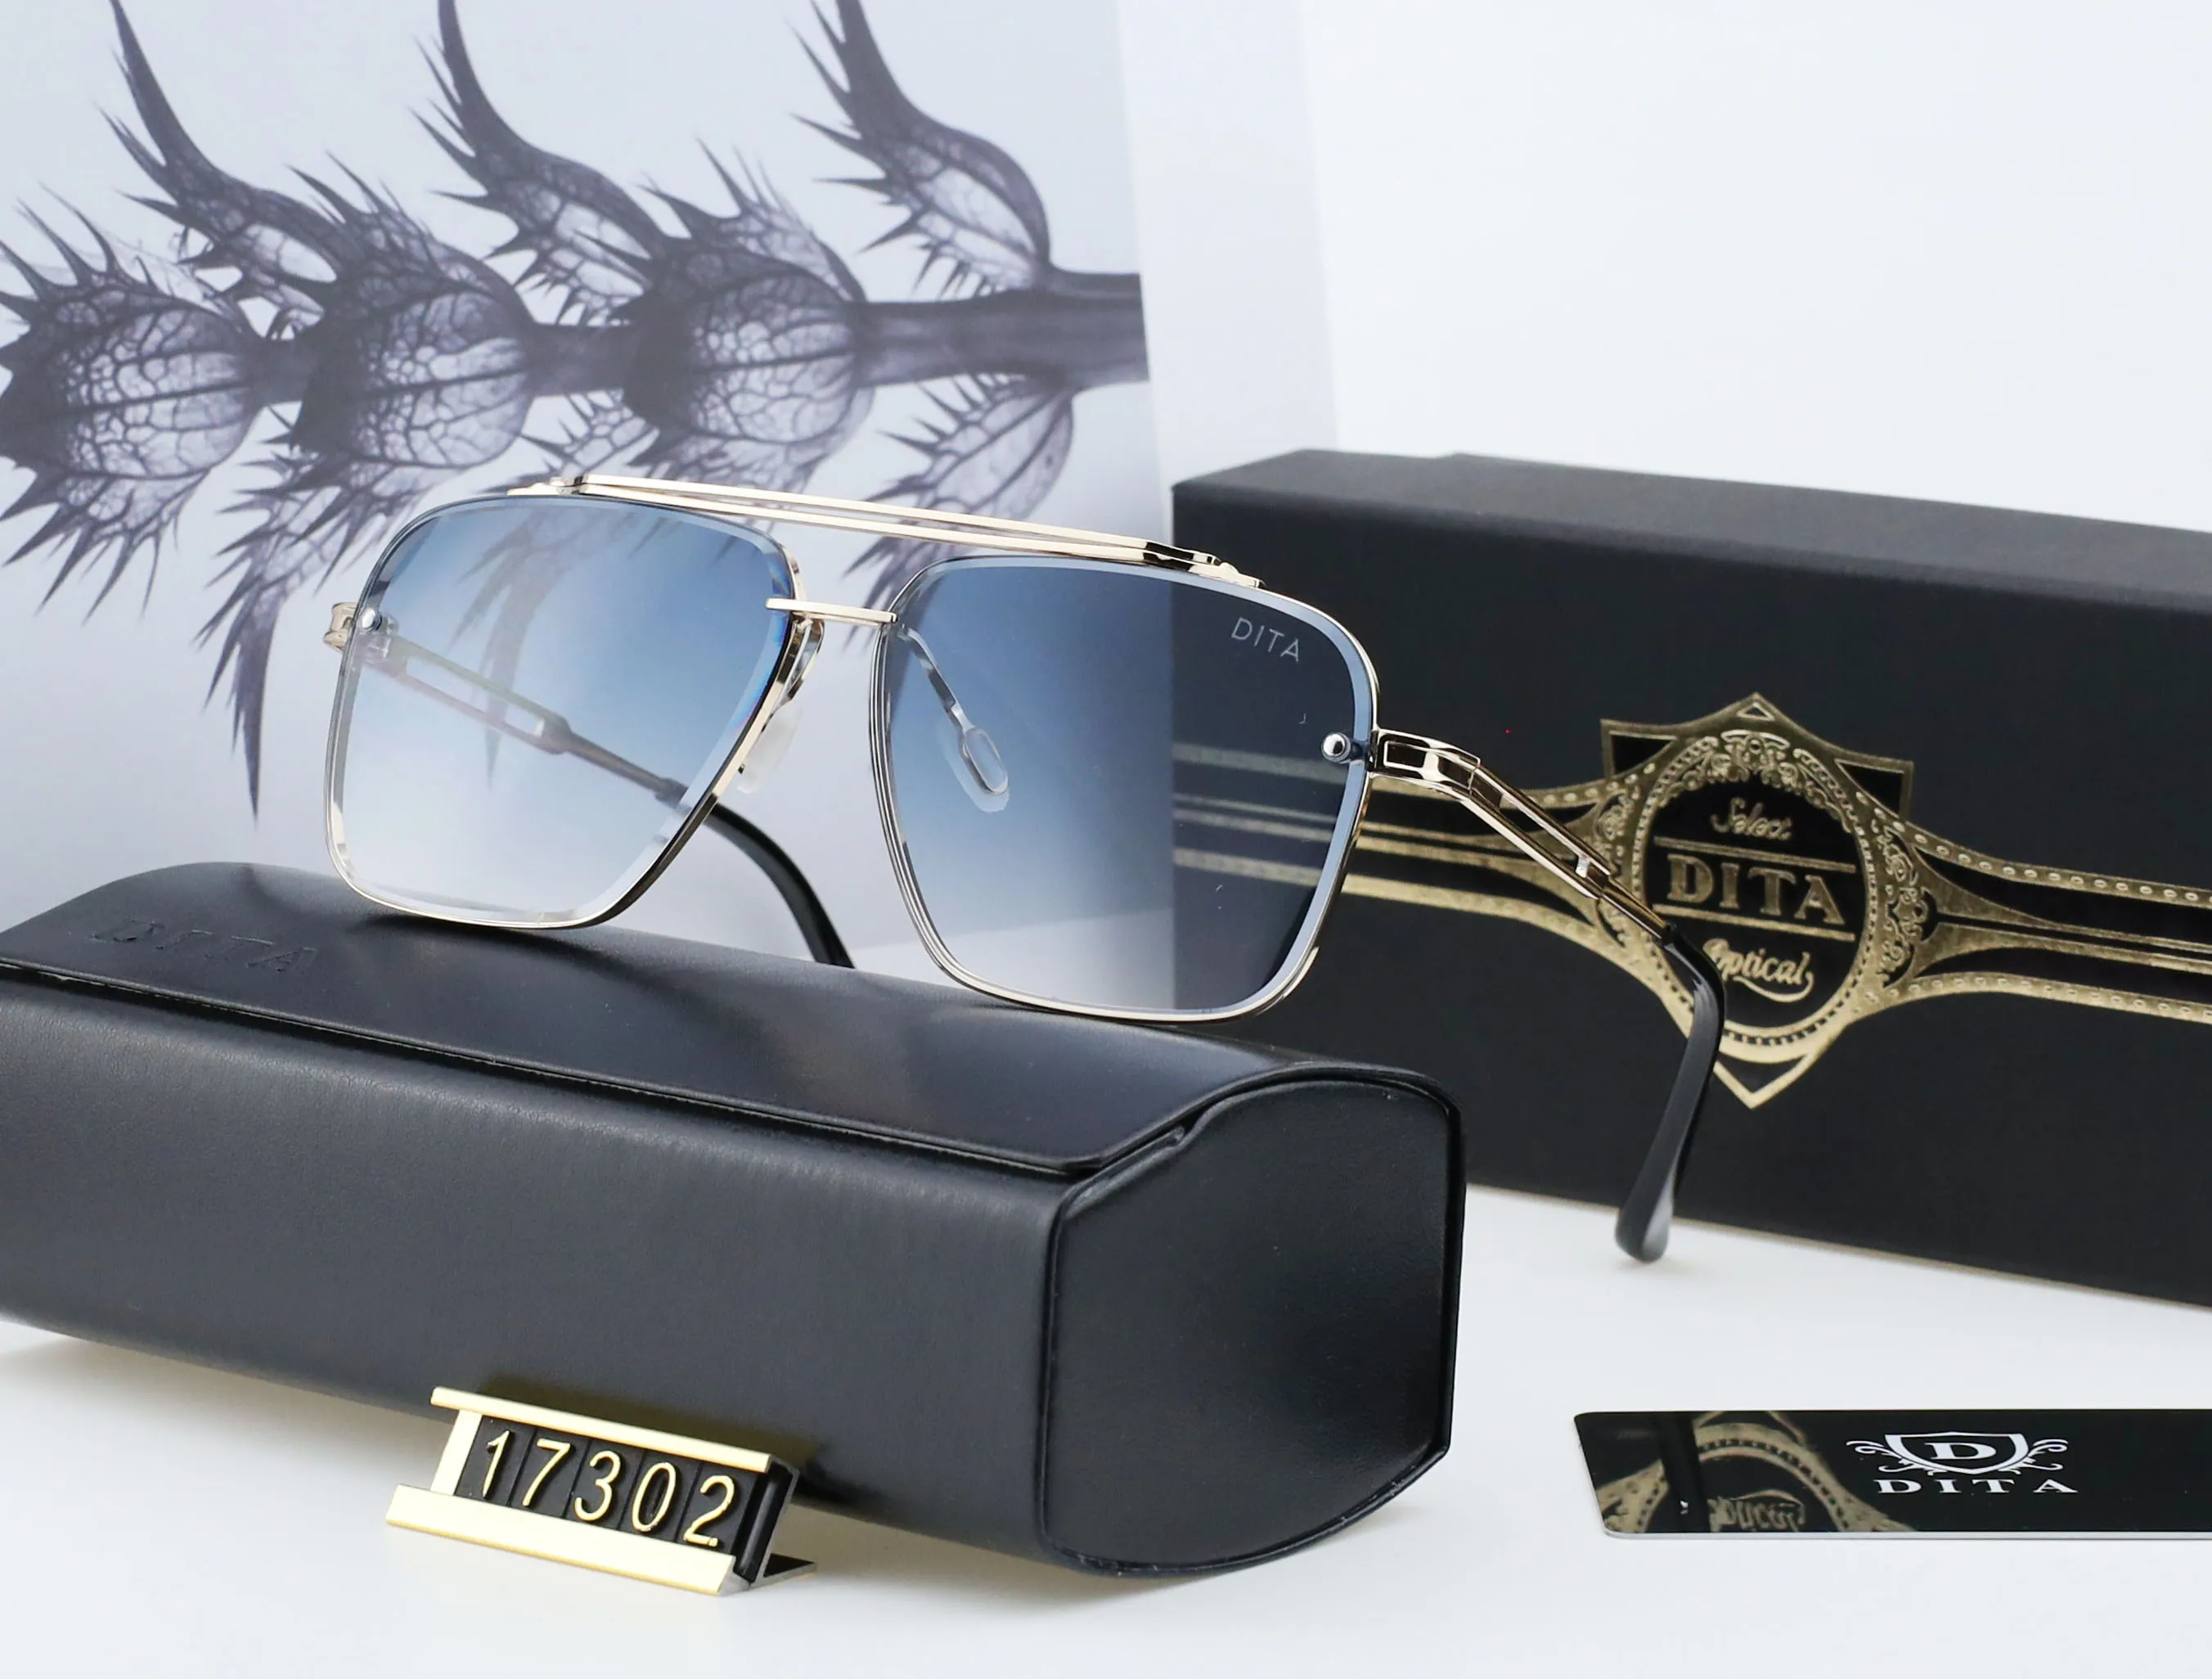 DITA 17302 gafas de sol de diseño para mujer gafas de sol lentes polarizadas UV400 montura cuadrada para hombres 287i